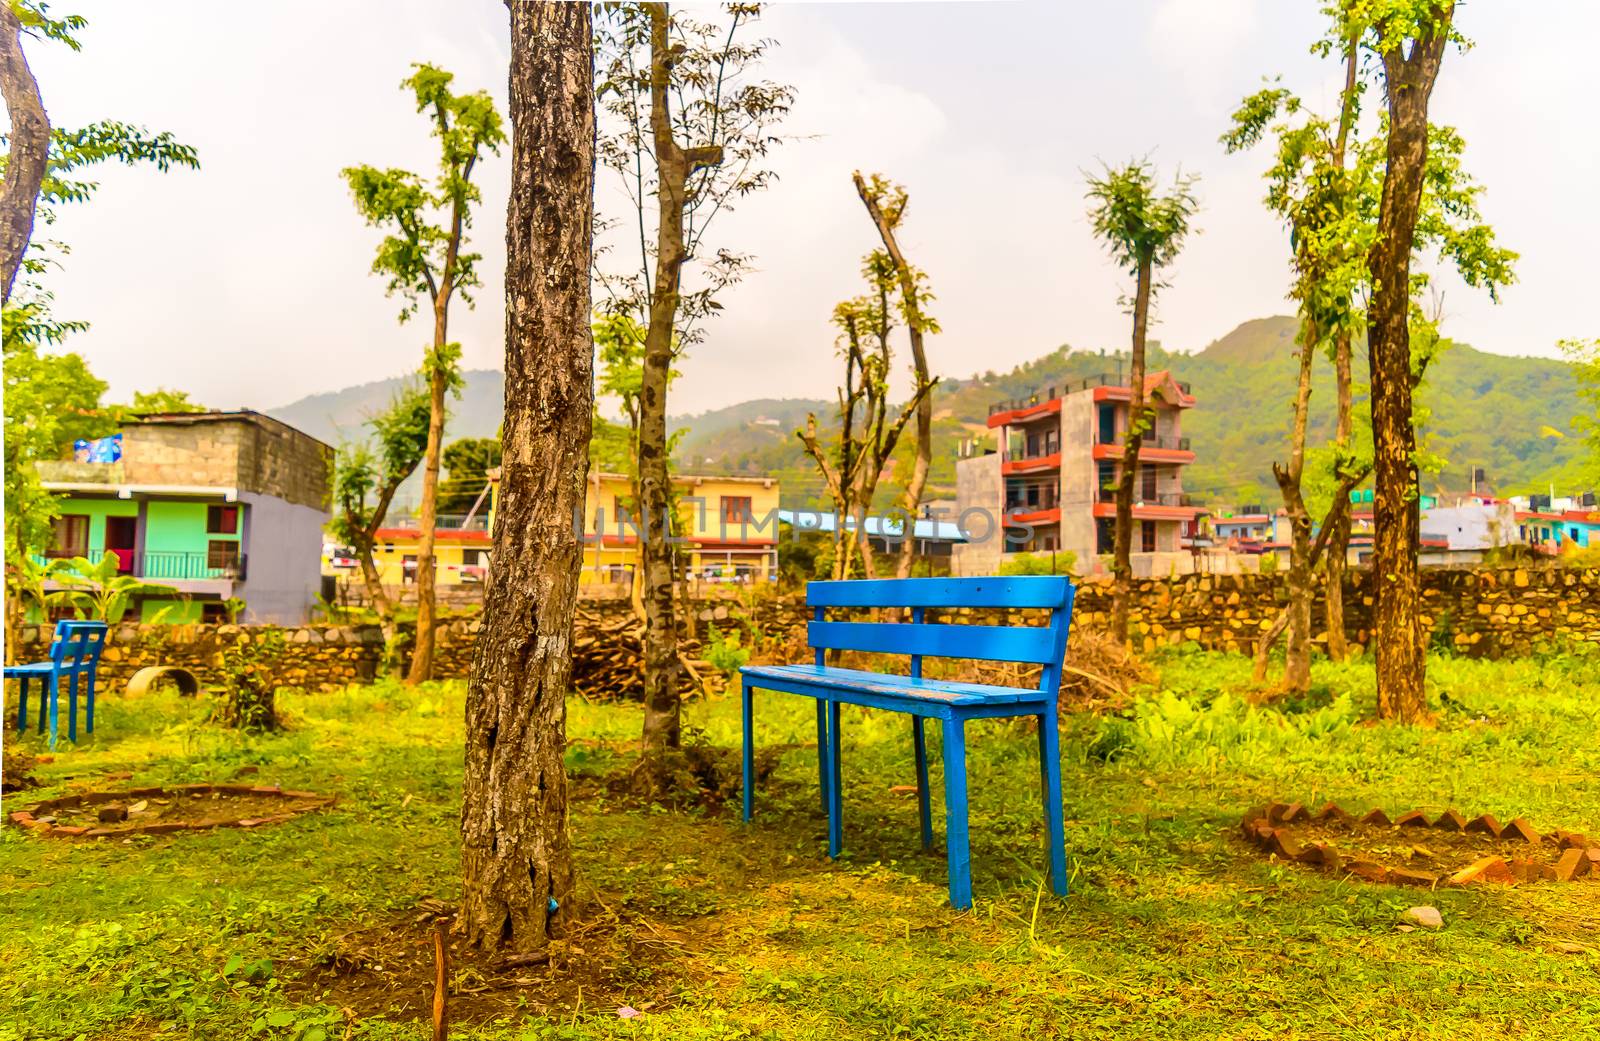 Idyllic mountain village bench and landscape, kathmandu nepal by sudiptabhowmick